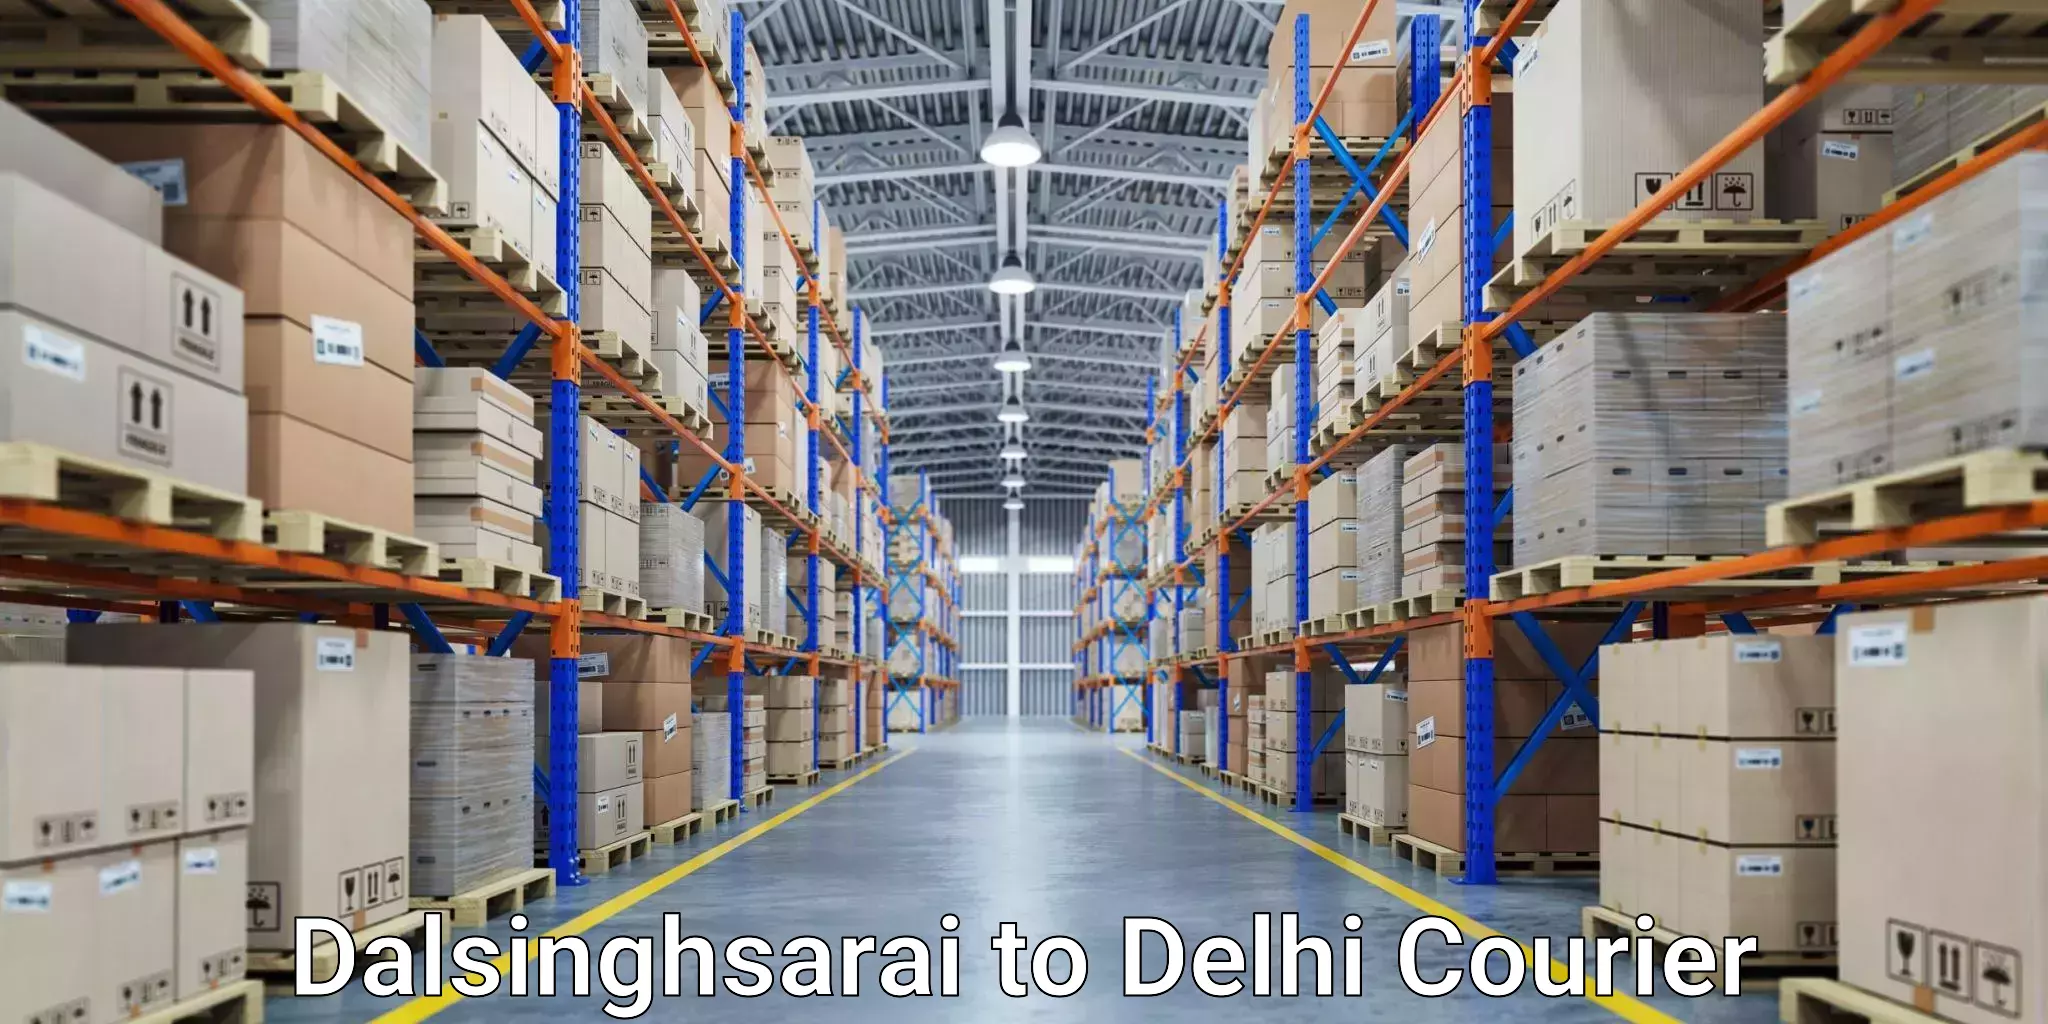 Business delivery service Dalsinghsarai to Delhi